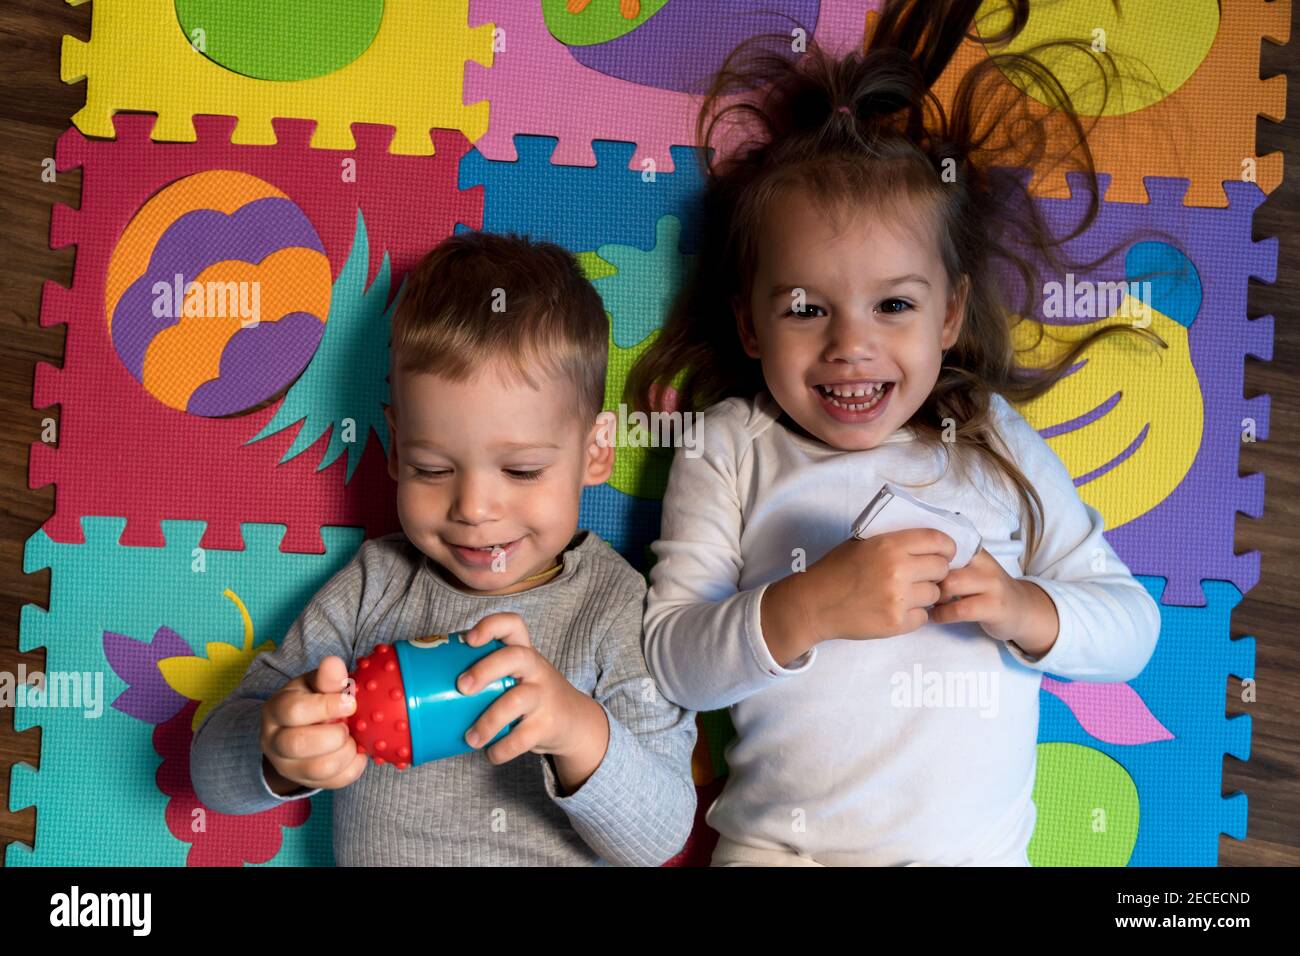 Kindheit, Familie Freundschaft, Spiele - close up Portrait zwei lustige Freude glücklich lächelnd kleines Kleinkind peschool Kinder Geschwister Zwillinge Bruder mit Schwester Stockfoto